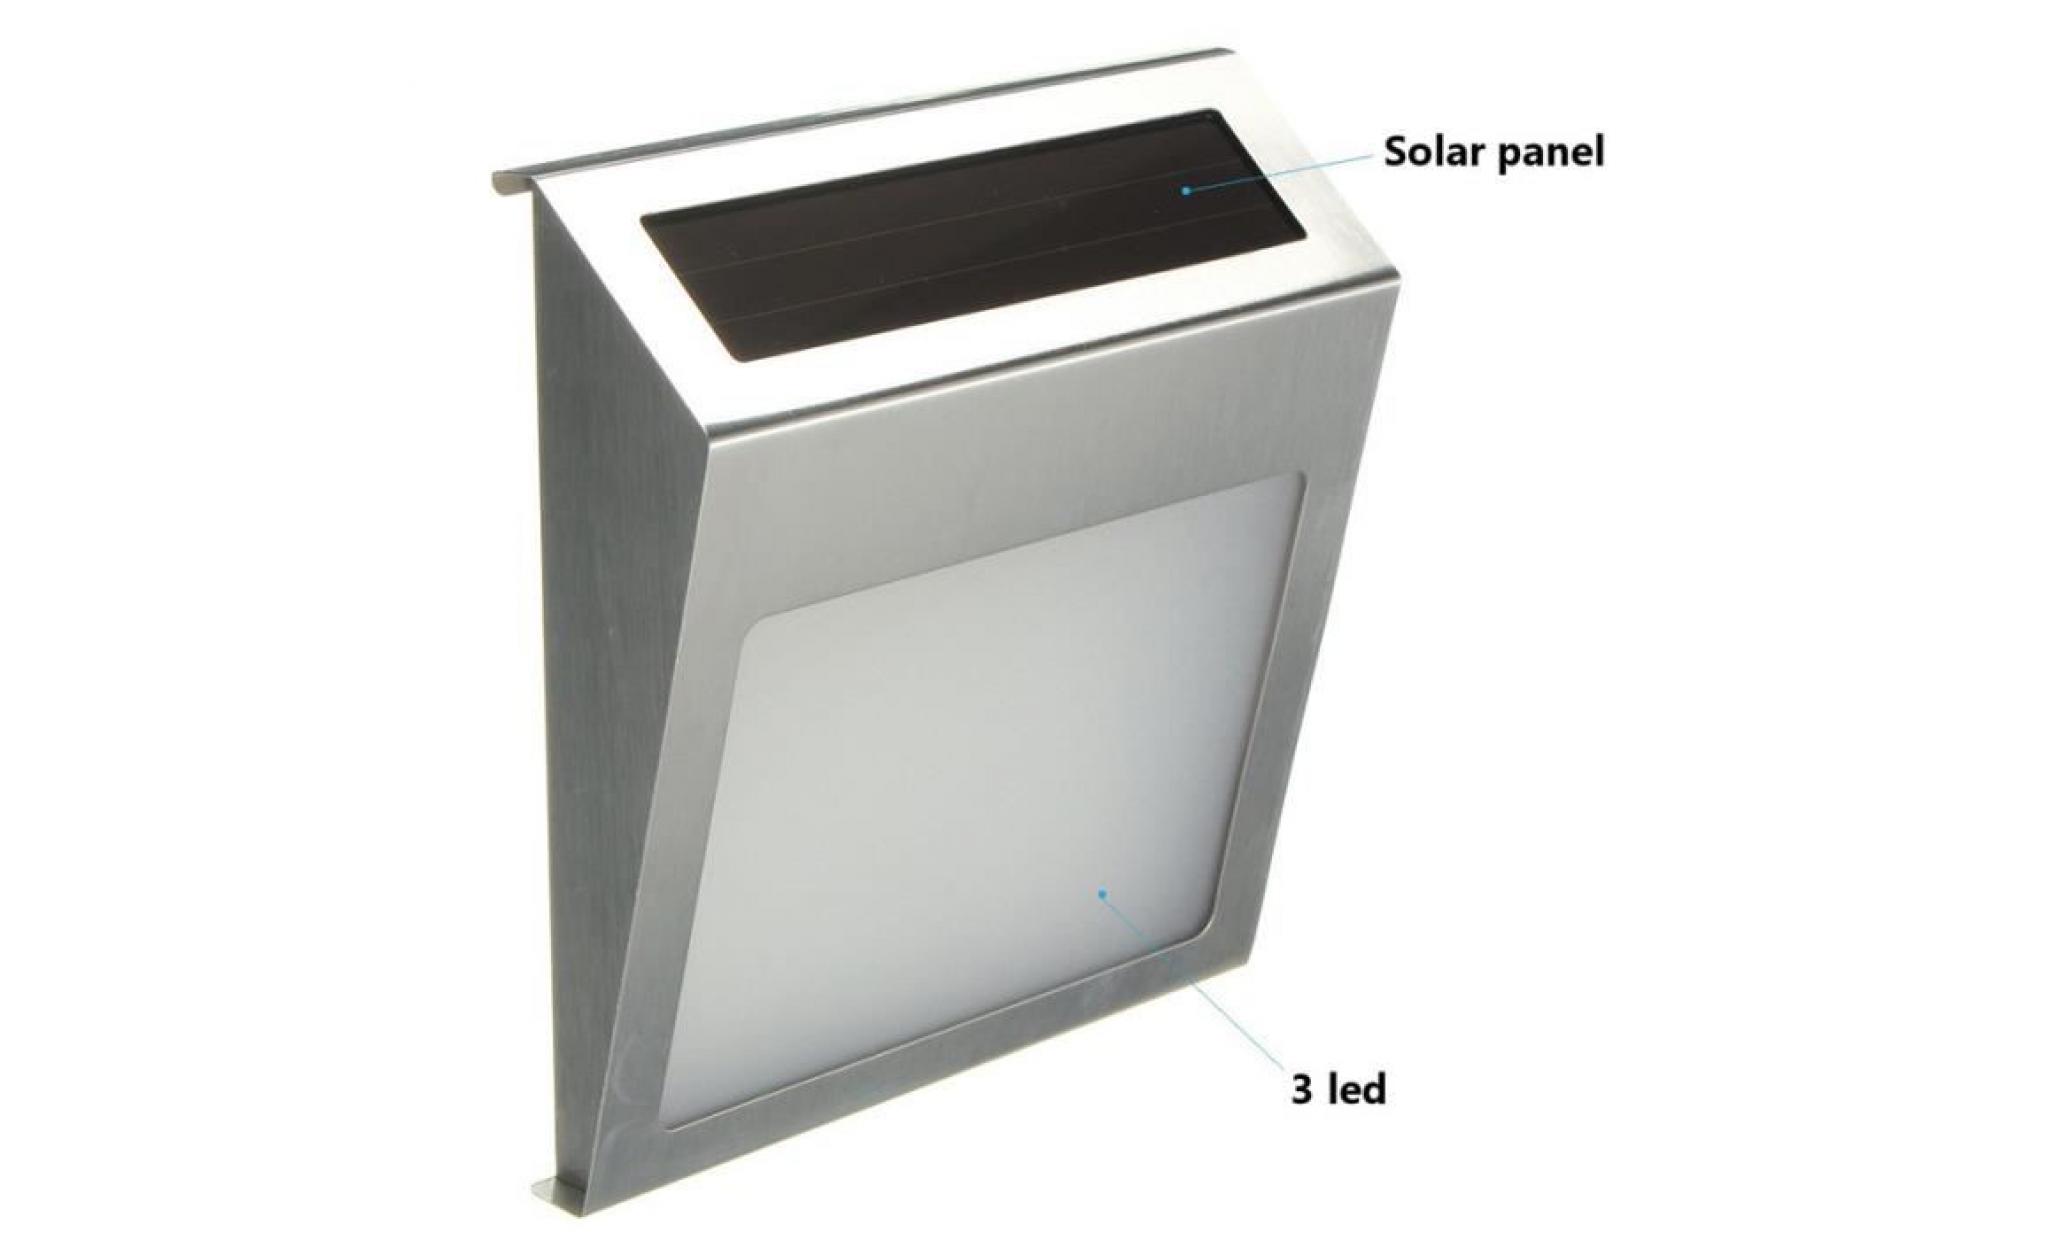 neufu 3led applique de porte plaque solaire énergie 1.2v / 600mah lampe murale acier inoxydable pas cher